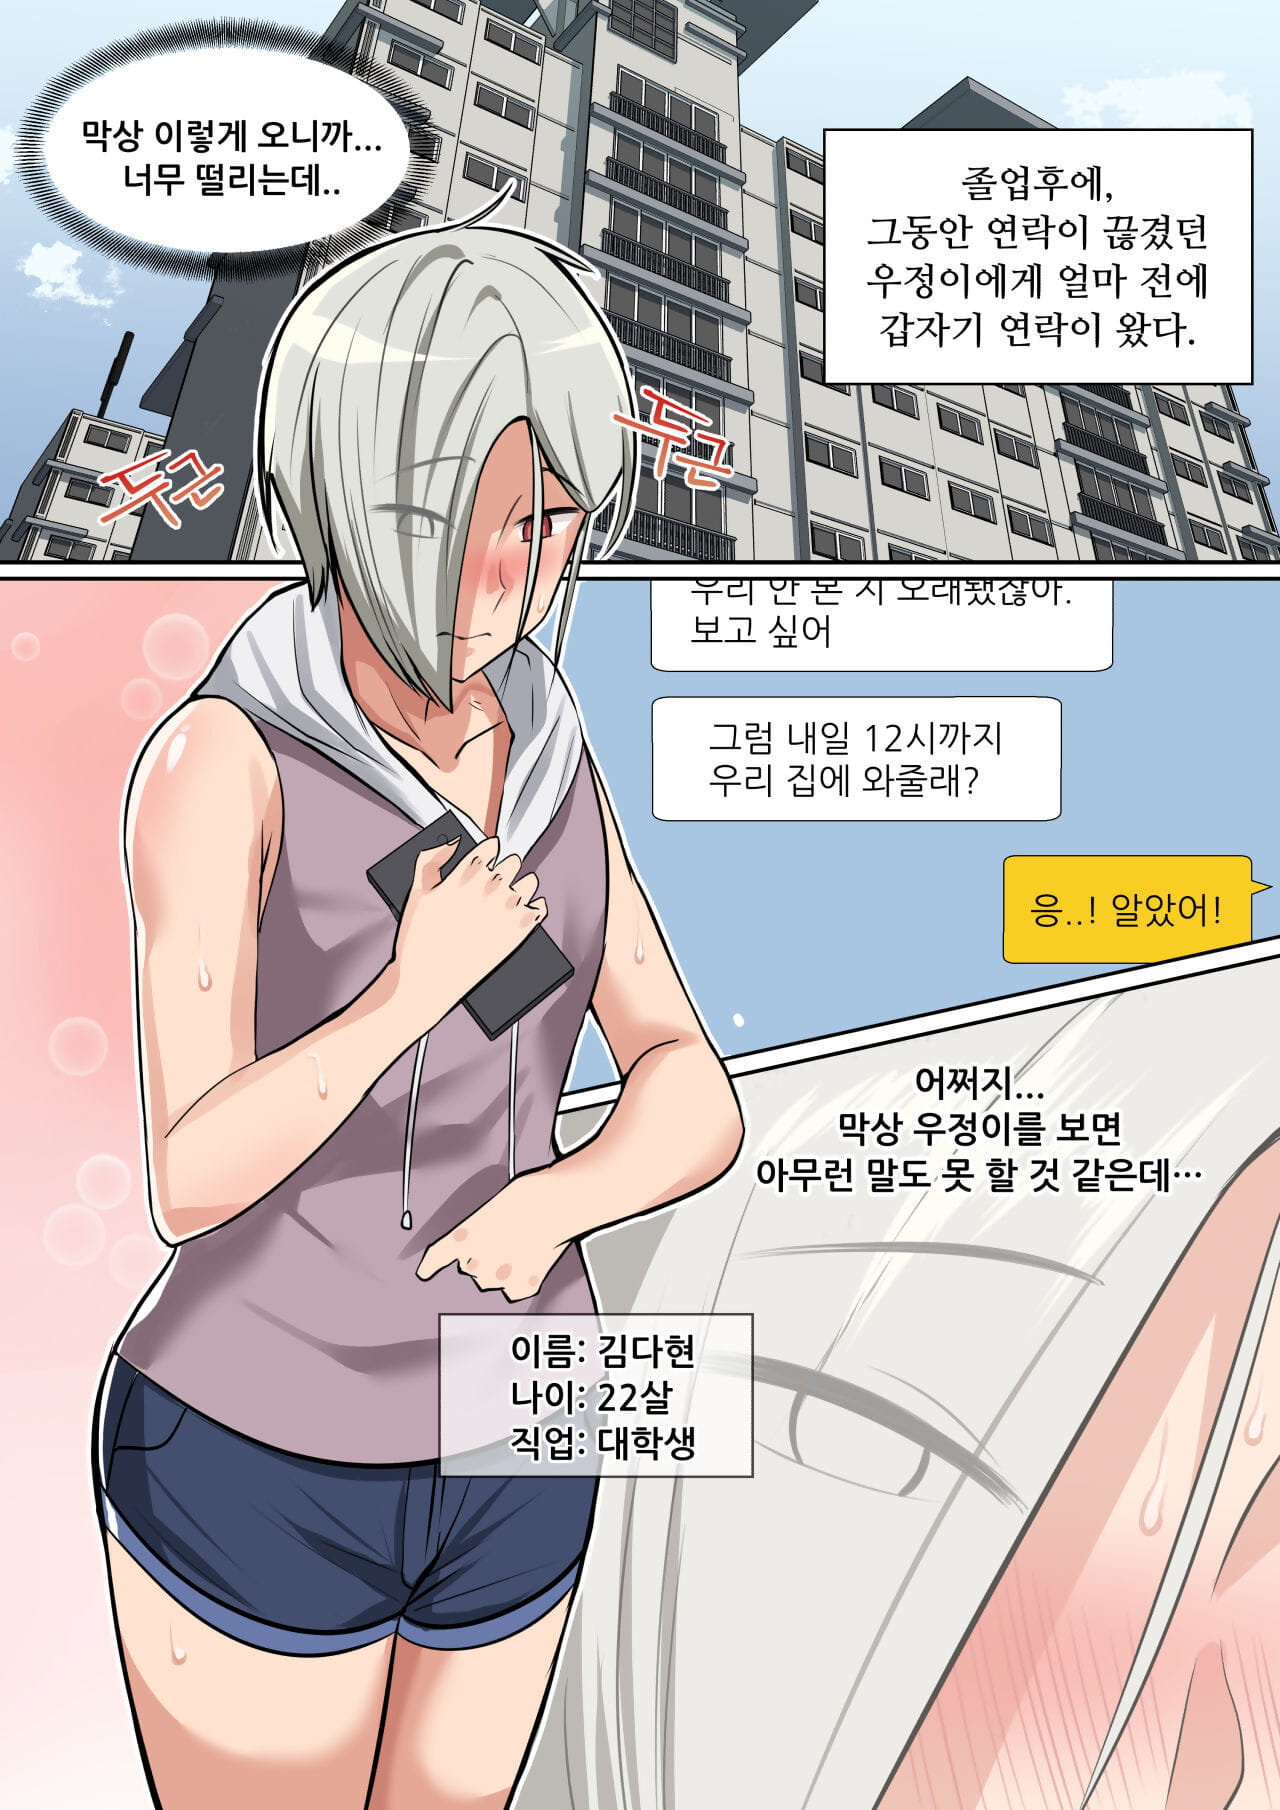 マロティックス 成熟した トラップ 韓国語 部分 2